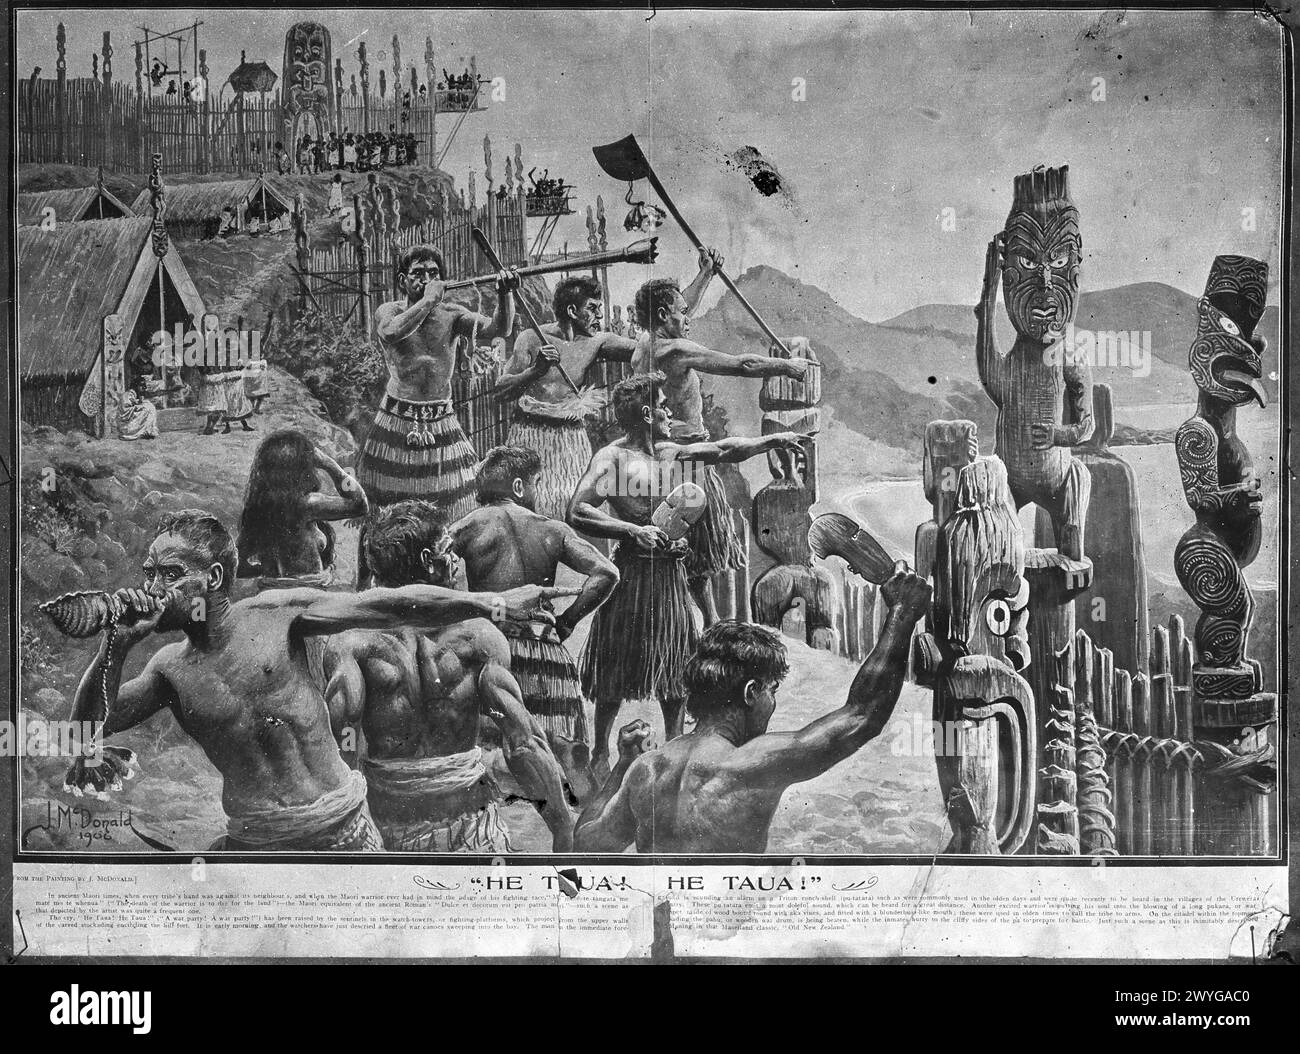 Reproduction d'une peinture de James J. McDonald en 1906 représentant des guerriers maoris se préparant à une attaque contre leur père. Un guerrier au premier plan souffle un avertissement sur une conque tandis que d'autres se rassemblent sur les palissades. Banque D'Images